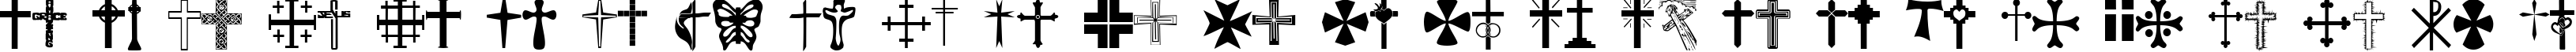 Пример написания английского алфавита шрифтом Christian Crosses